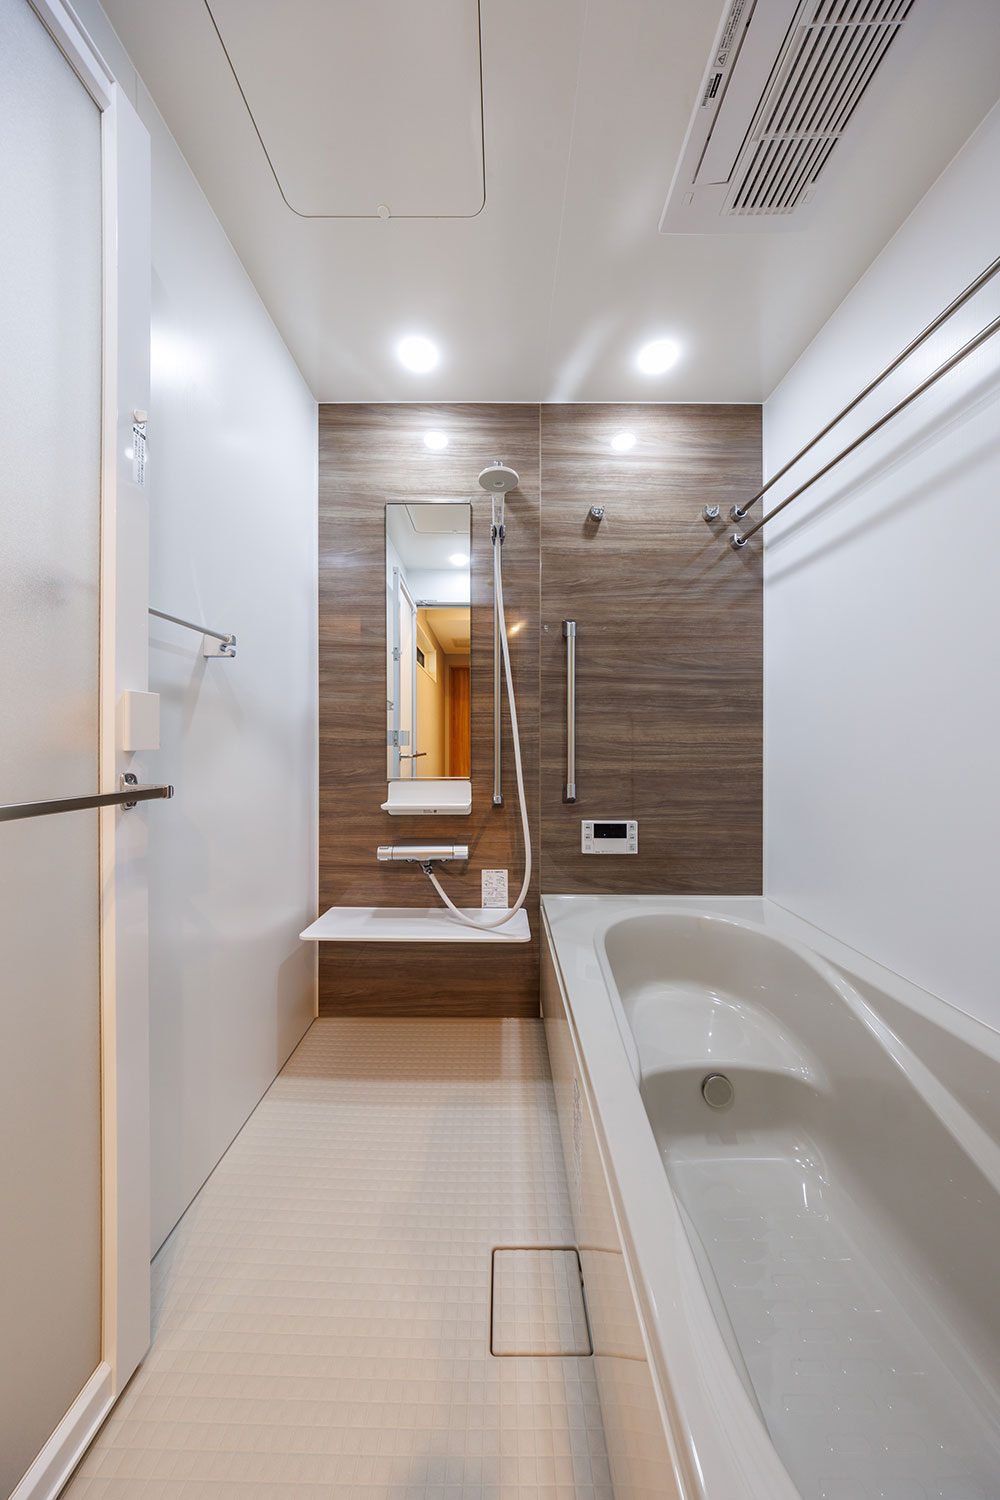 T-2／半身浴も楽しめるベンチ浴槽をセットした浴室。大粒の水滴が心地よいスイッチ付エコアクアシャワーを装備。